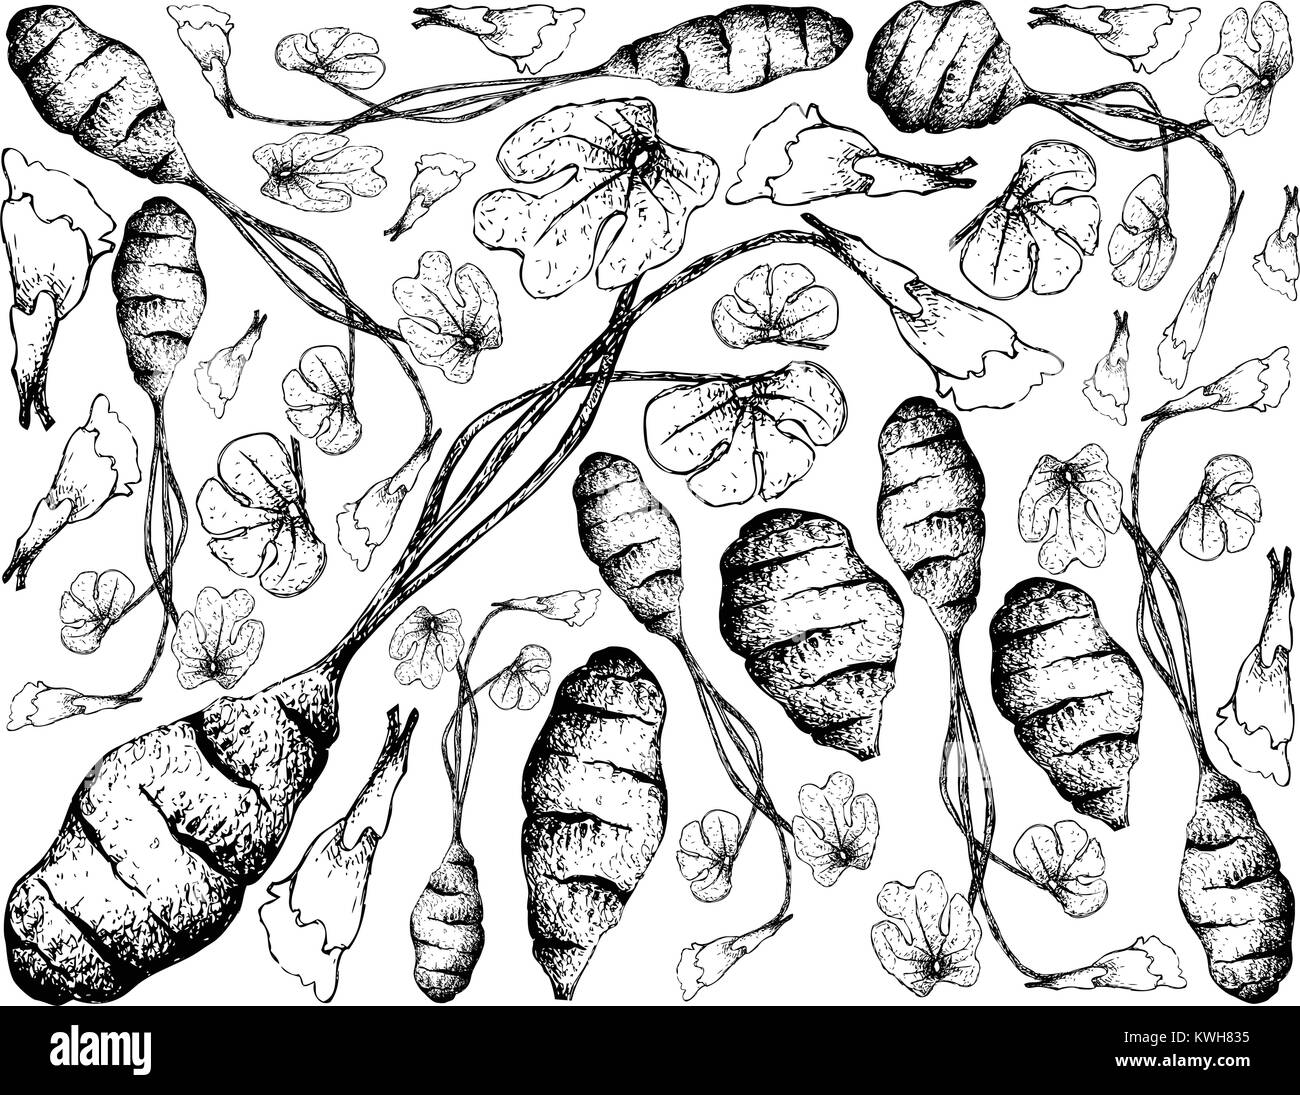 Root und knötchenförmige Gemüse, Illustration Hand gezeichnete Skizze von frischem Mashua oder tropaeolum Tuberosum Pflanze isoliert auf weißem Hintergrund. Stock Vektor